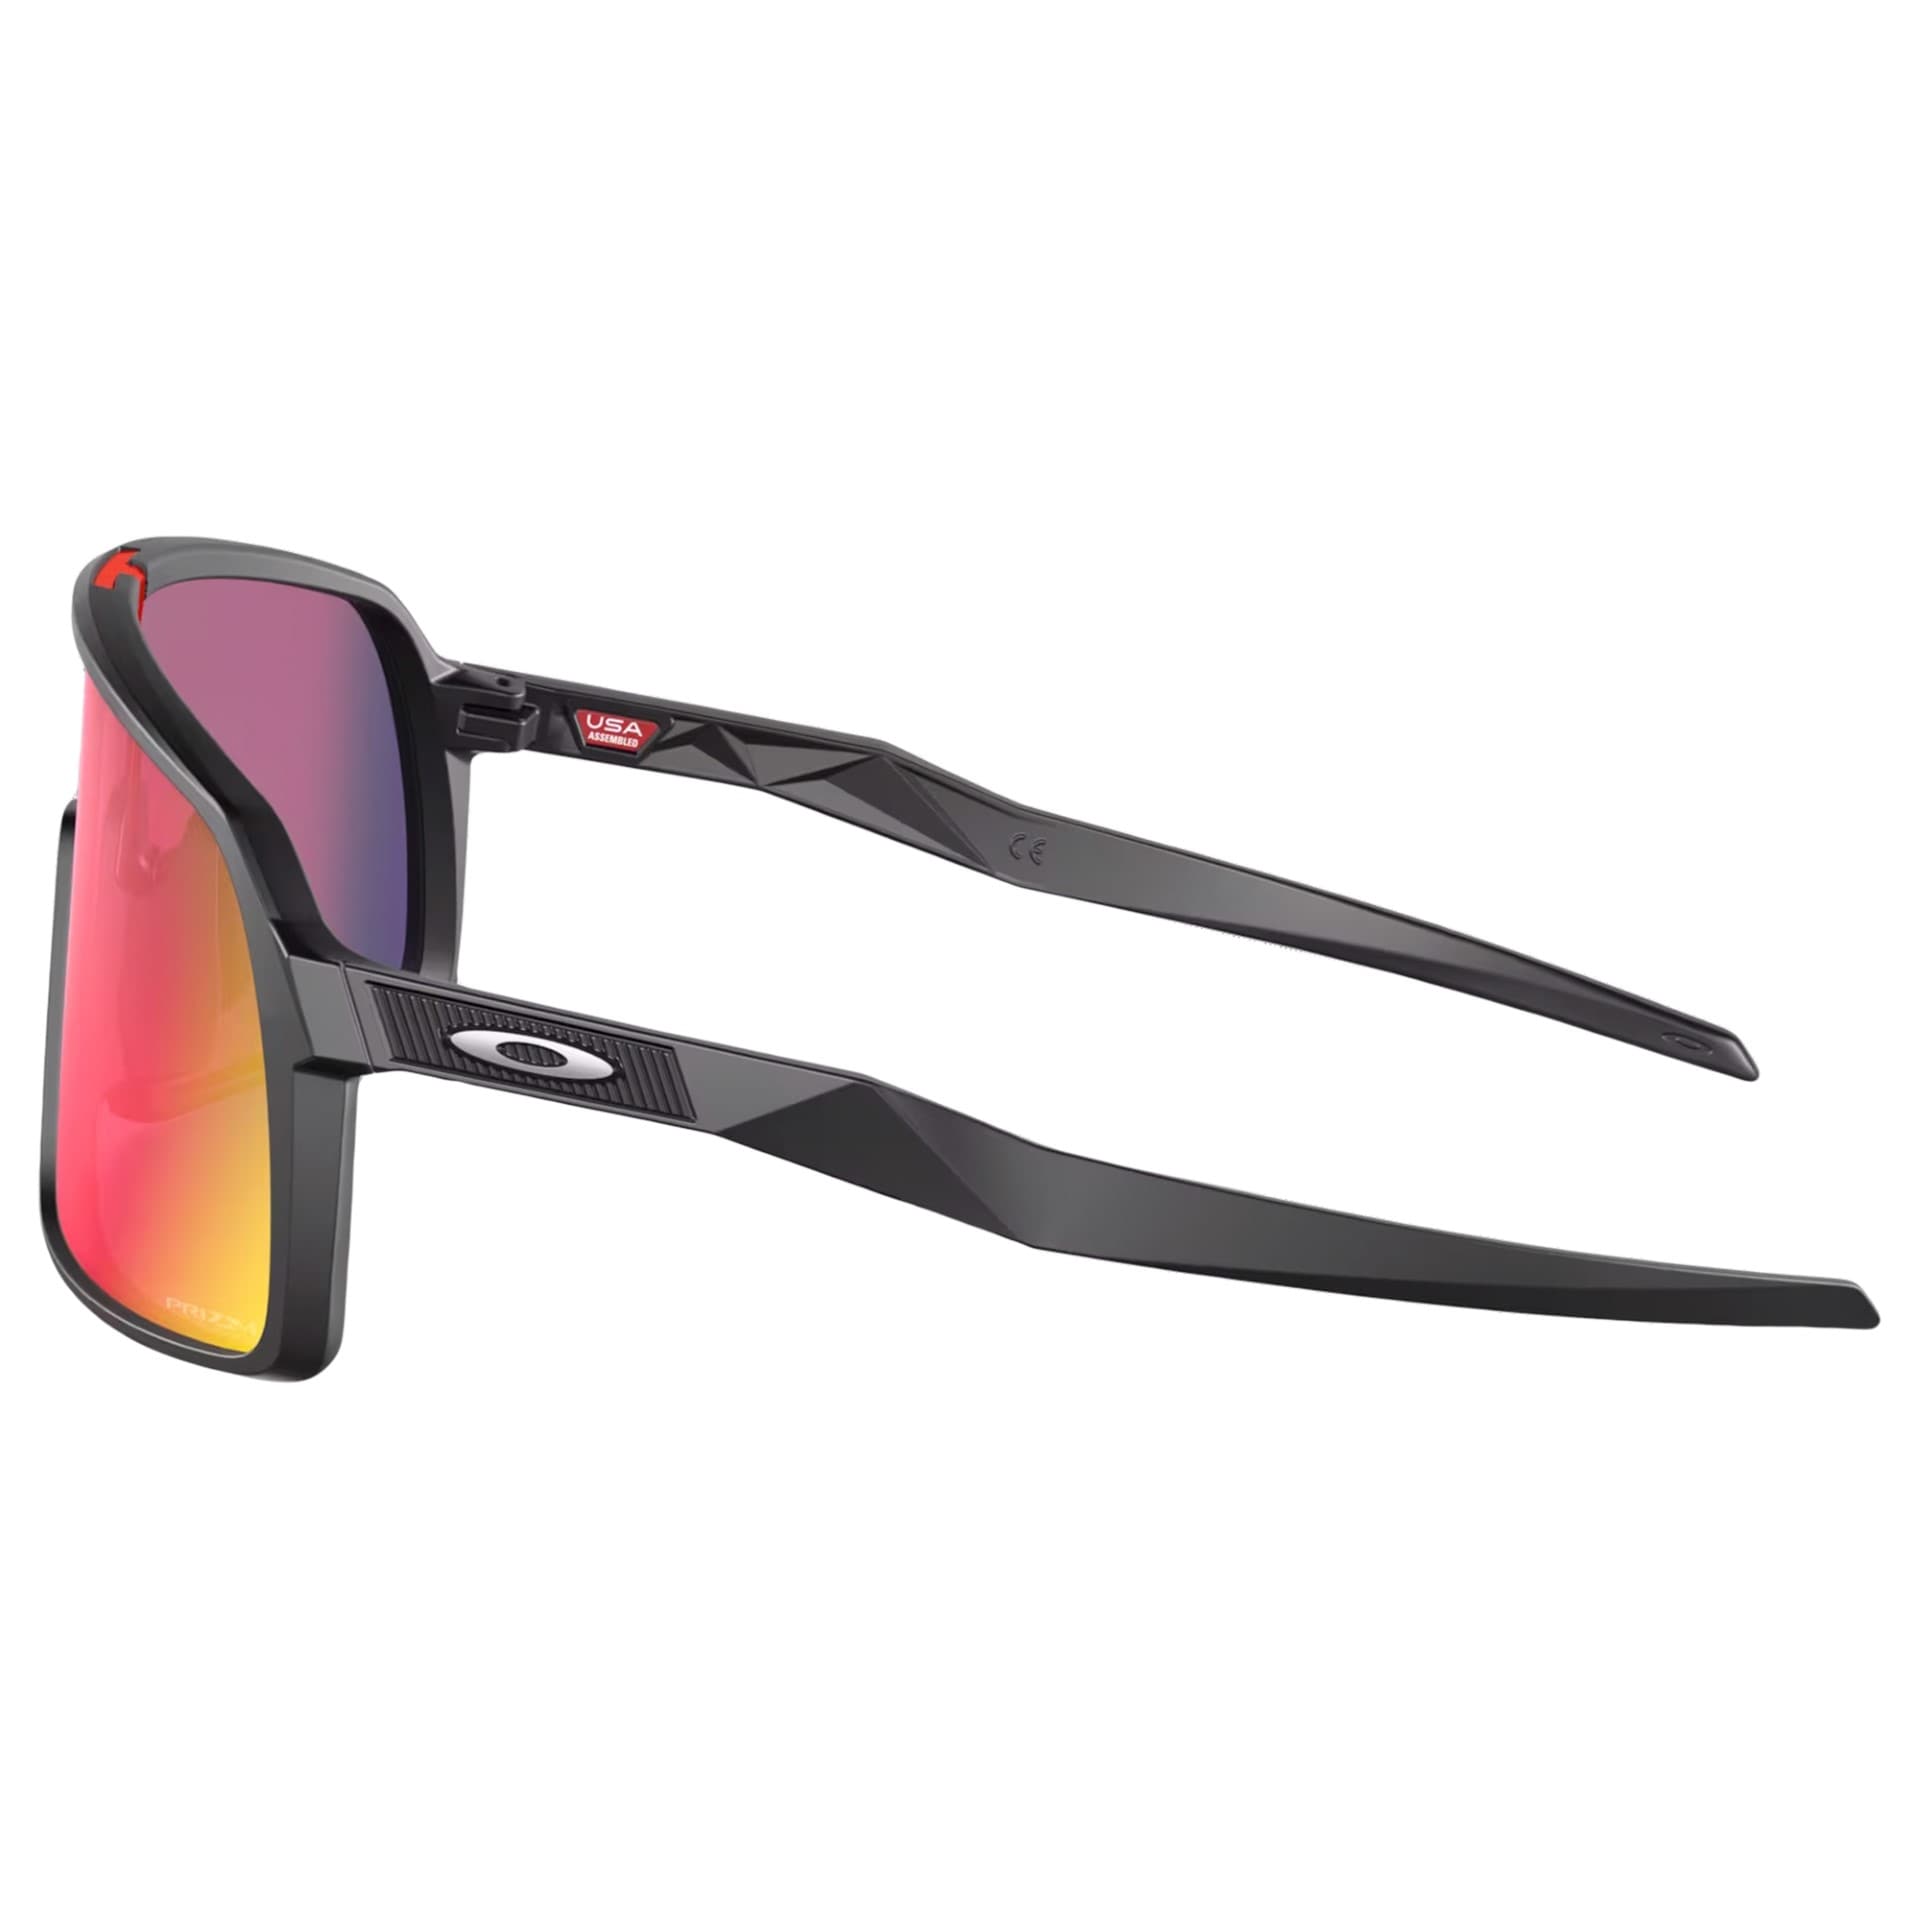 Okulary przeciwsłoneczne Oakley Sutro - Matte Black/Prizm Road